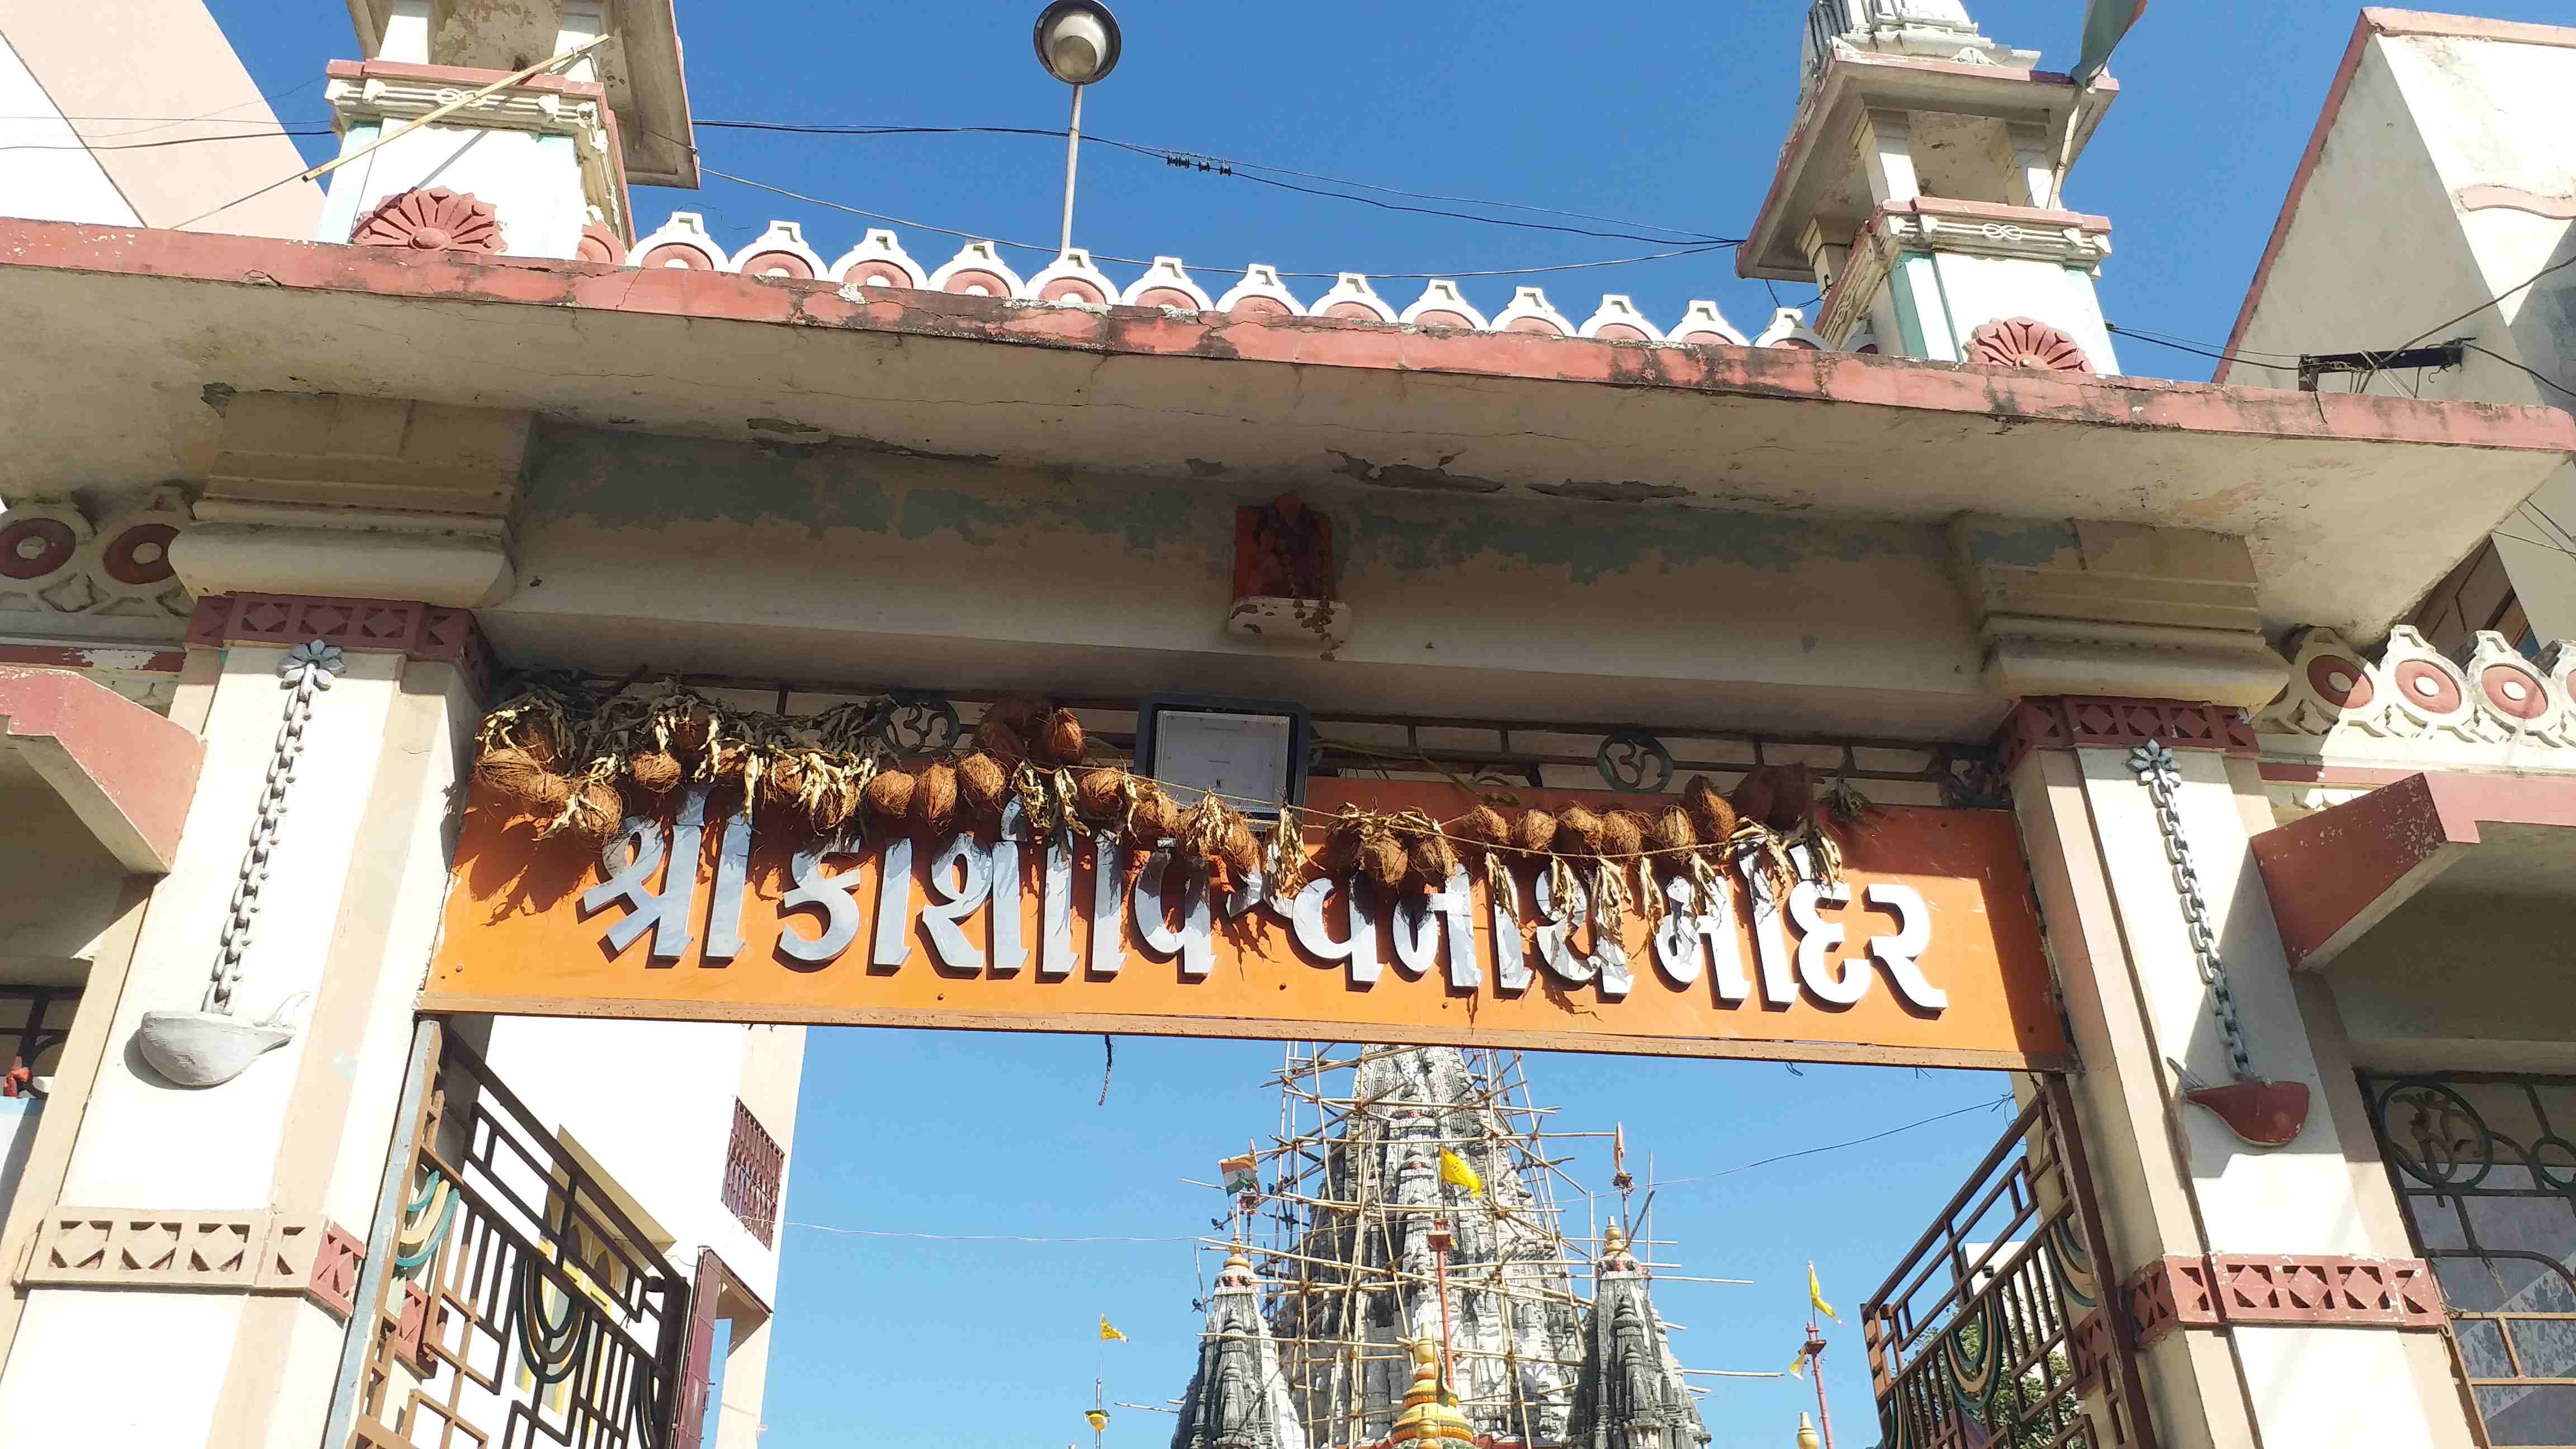 ચારેય દિશામાંથી દર્શન કરી શકો તેવું ગુજરાતનું એકમાત્ર મંદિર